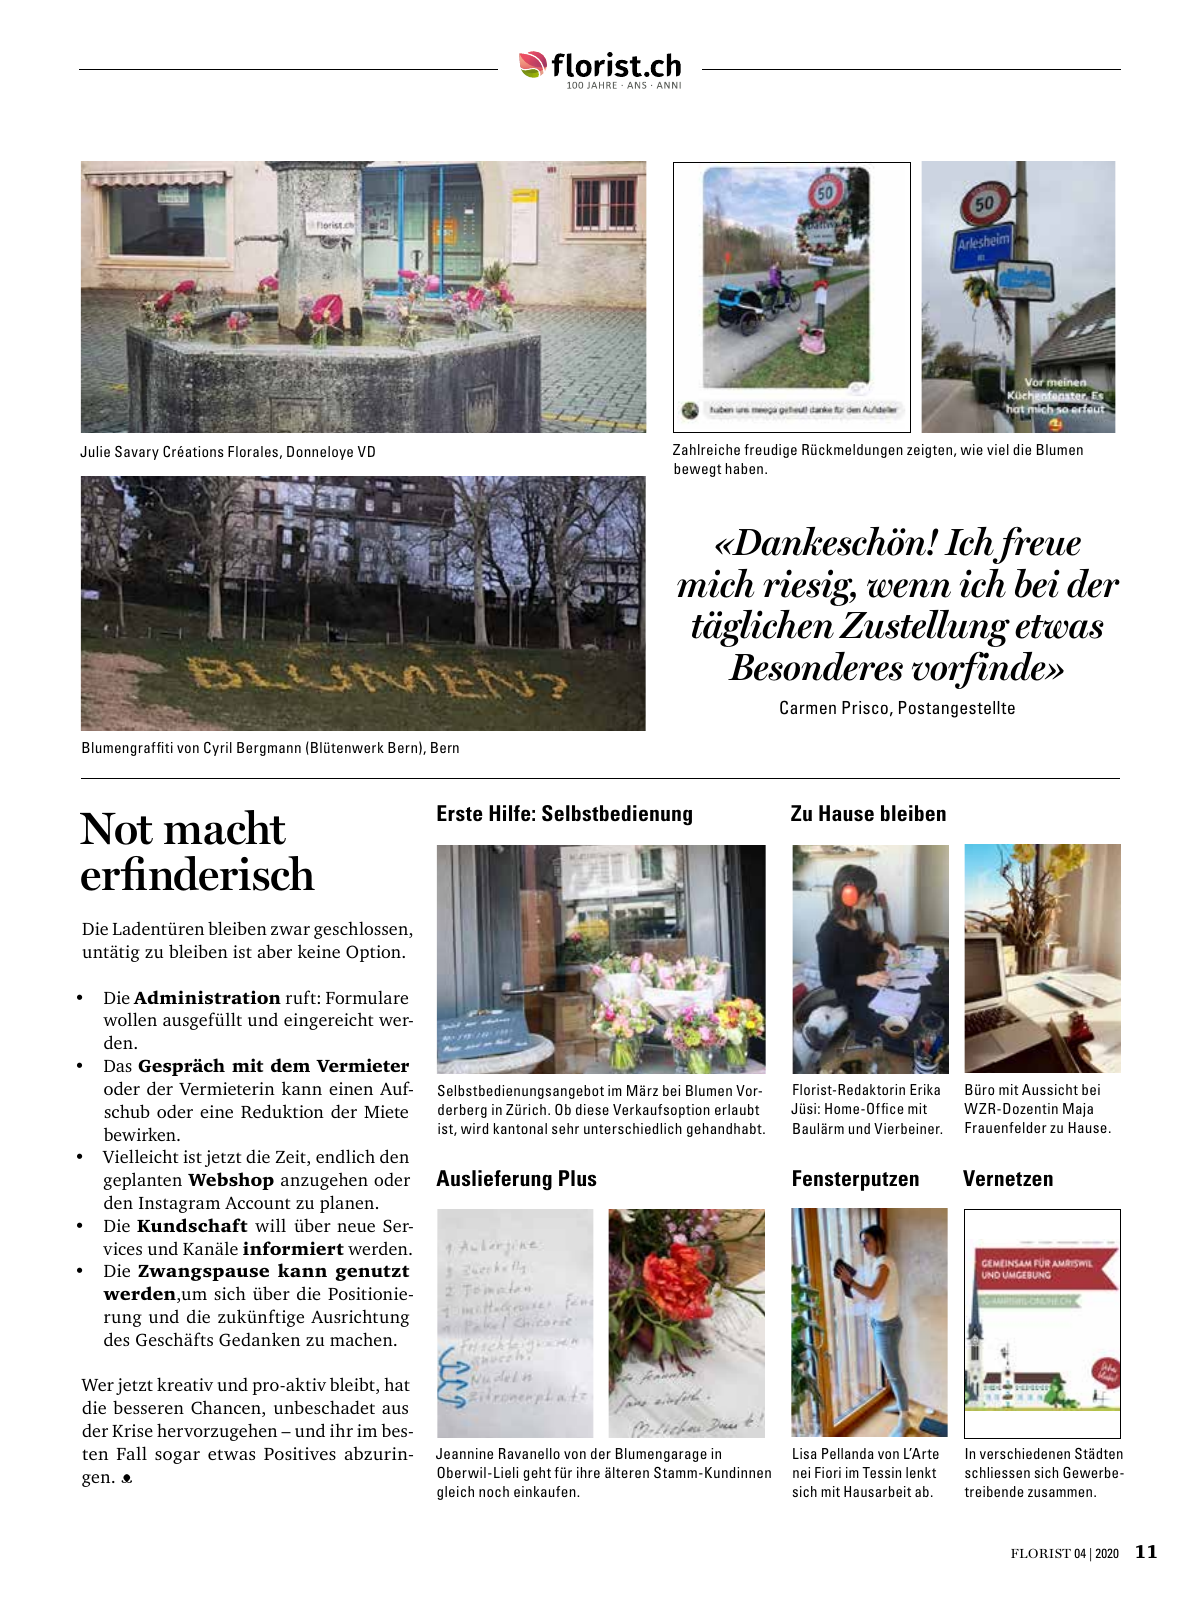 Vorschau Florist - Ausgabe April 2020 Seite 9